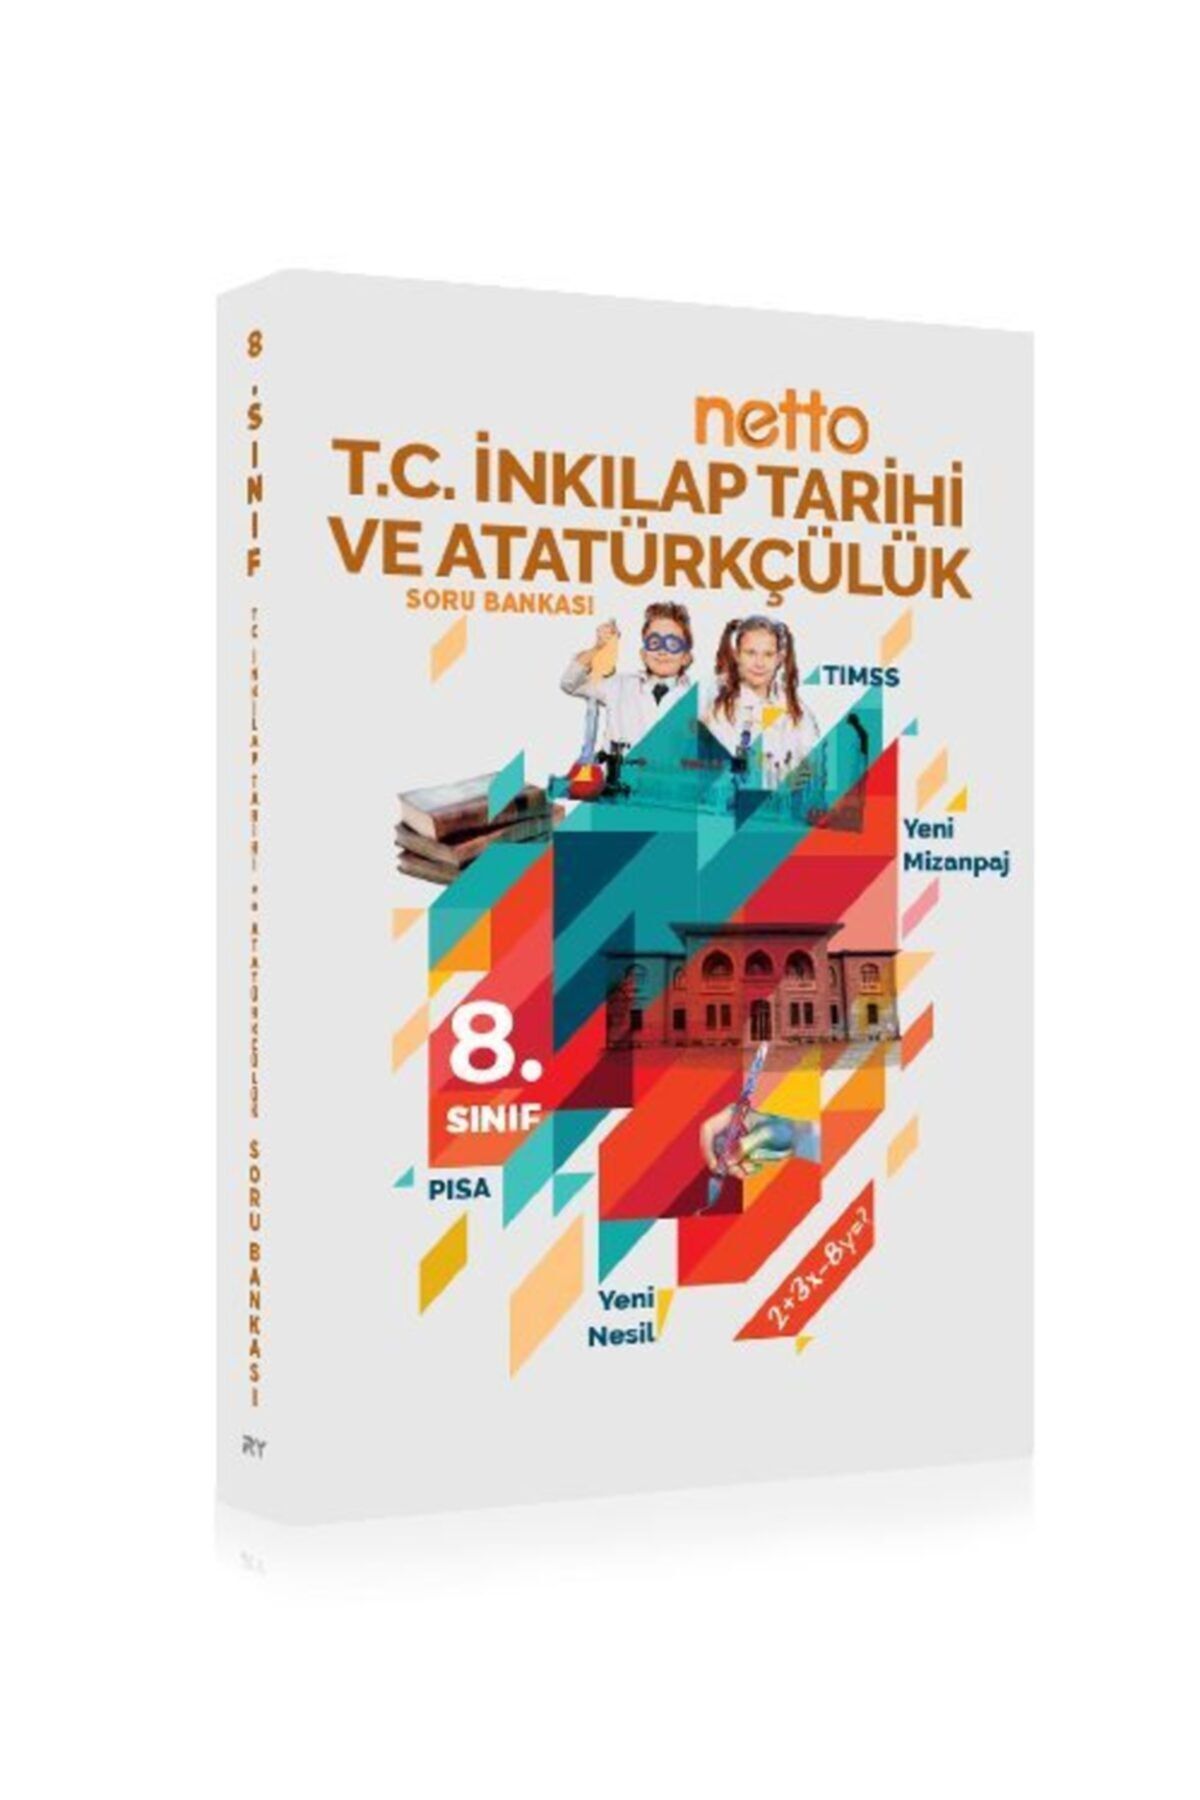 Referans Yayınları 8.sınıf Netto T. C. Inkılap Tarihi Ve Atatürkçülük Soru Bankası